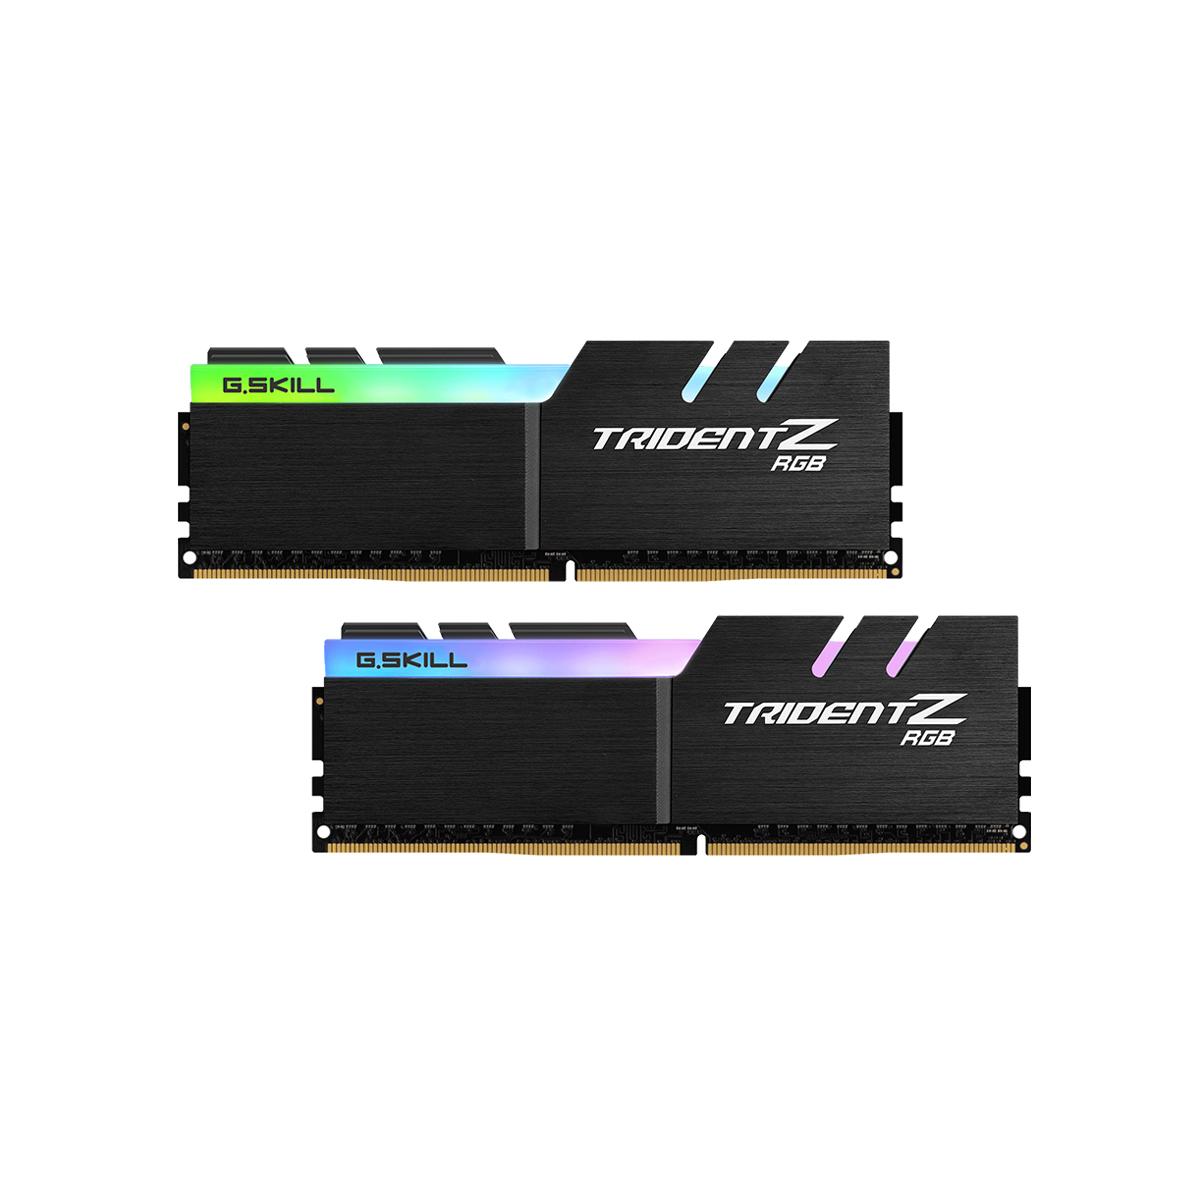 MEMORIA DIMM DDR4 G.SKILL (F4-3600C17D-32GTZR) 32GB (2X16GB) 3600 MHZ, TRIDENT Z RGB - GSKILL